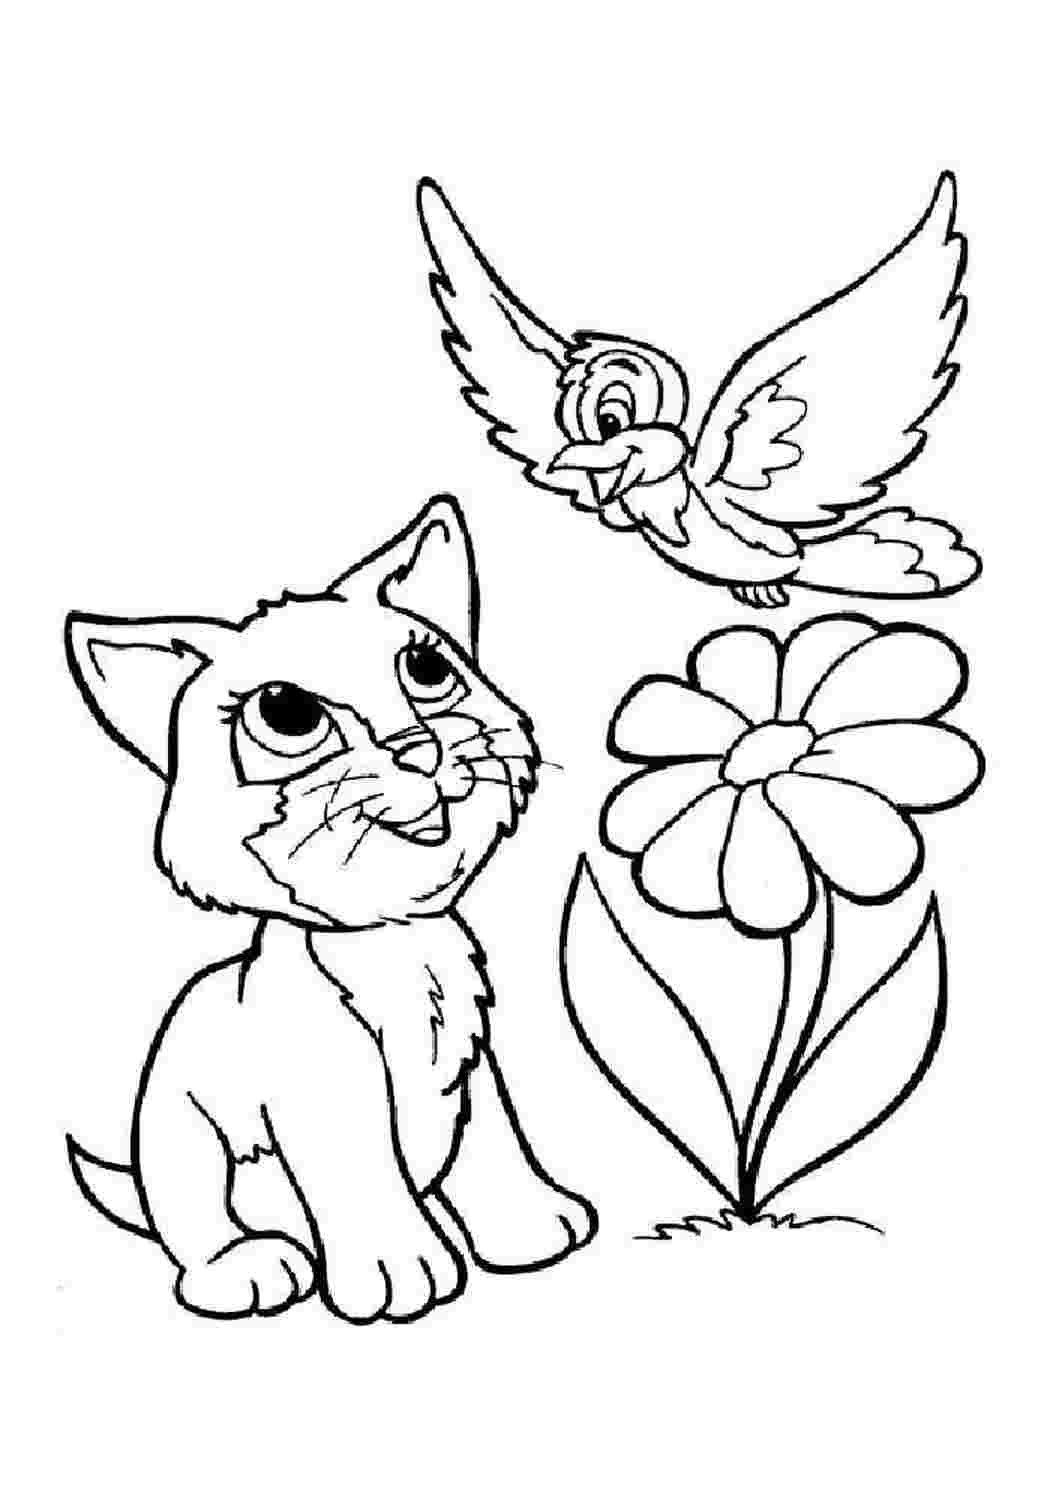 Раскраски Коты и кошки распечатать или скачать бесплатно в формате PDF